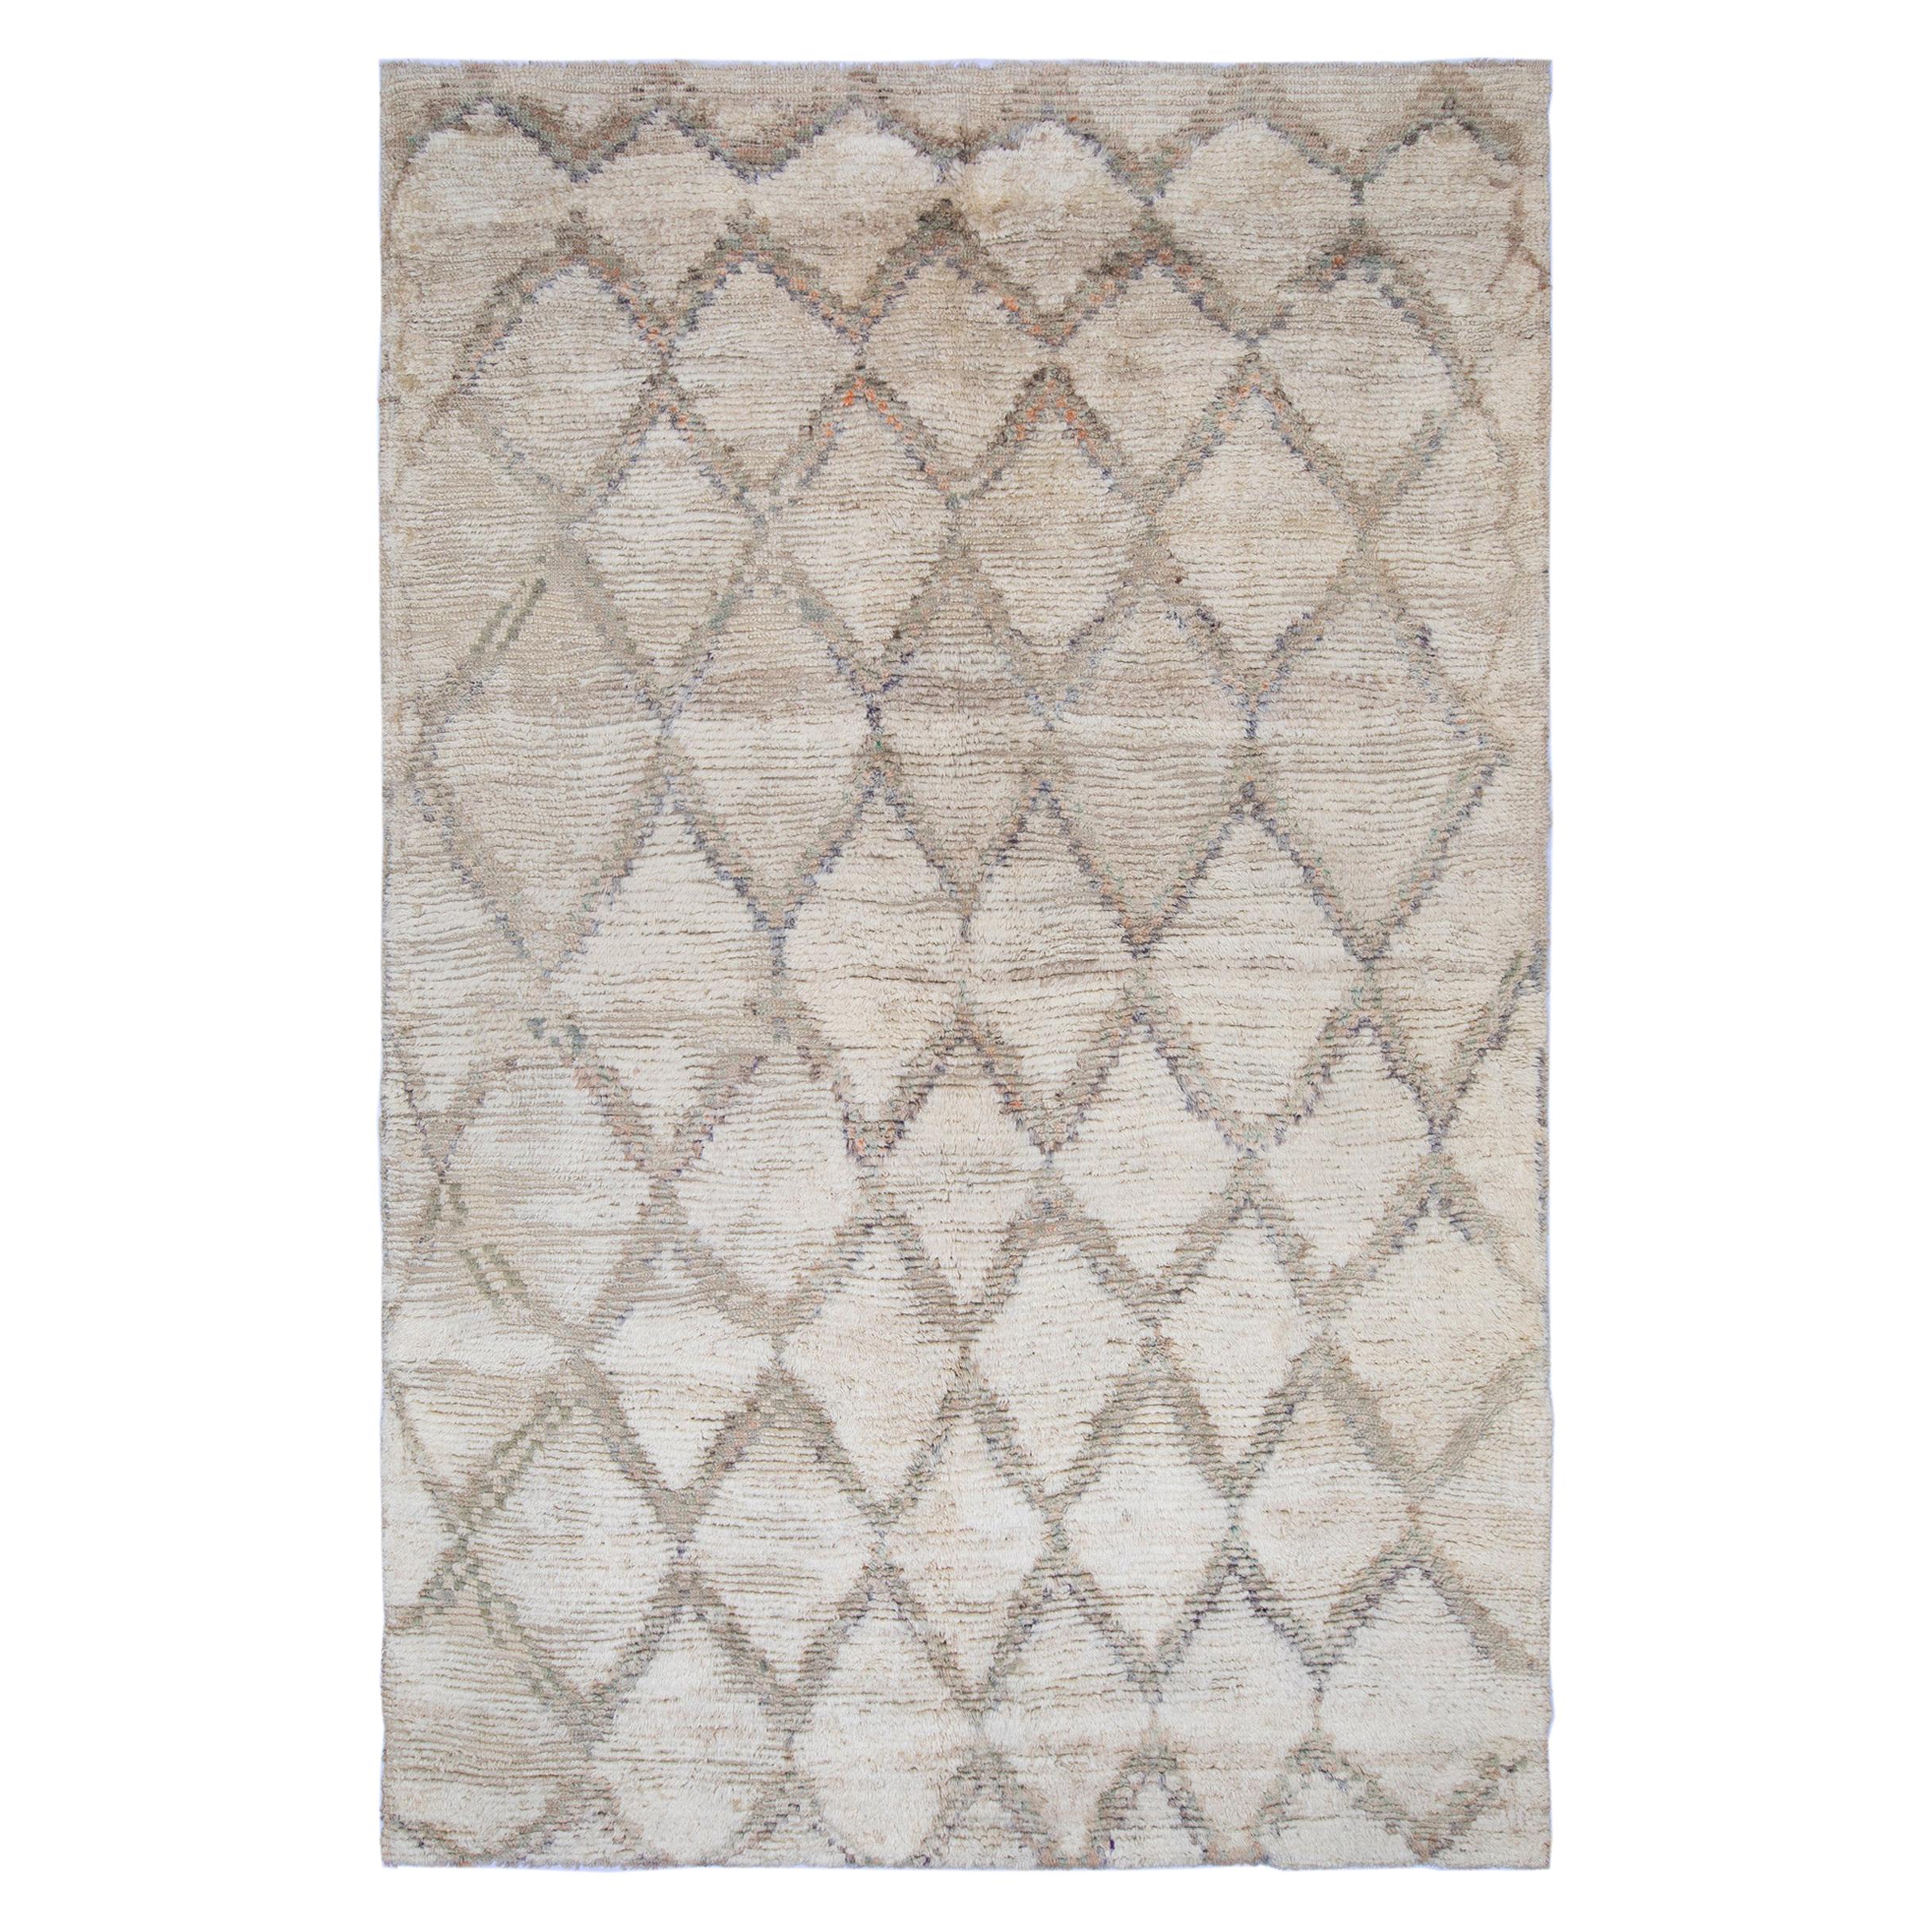 Marokkanischer handgeknüpfter Teppich mit Rautenmuster in Sand und Beige